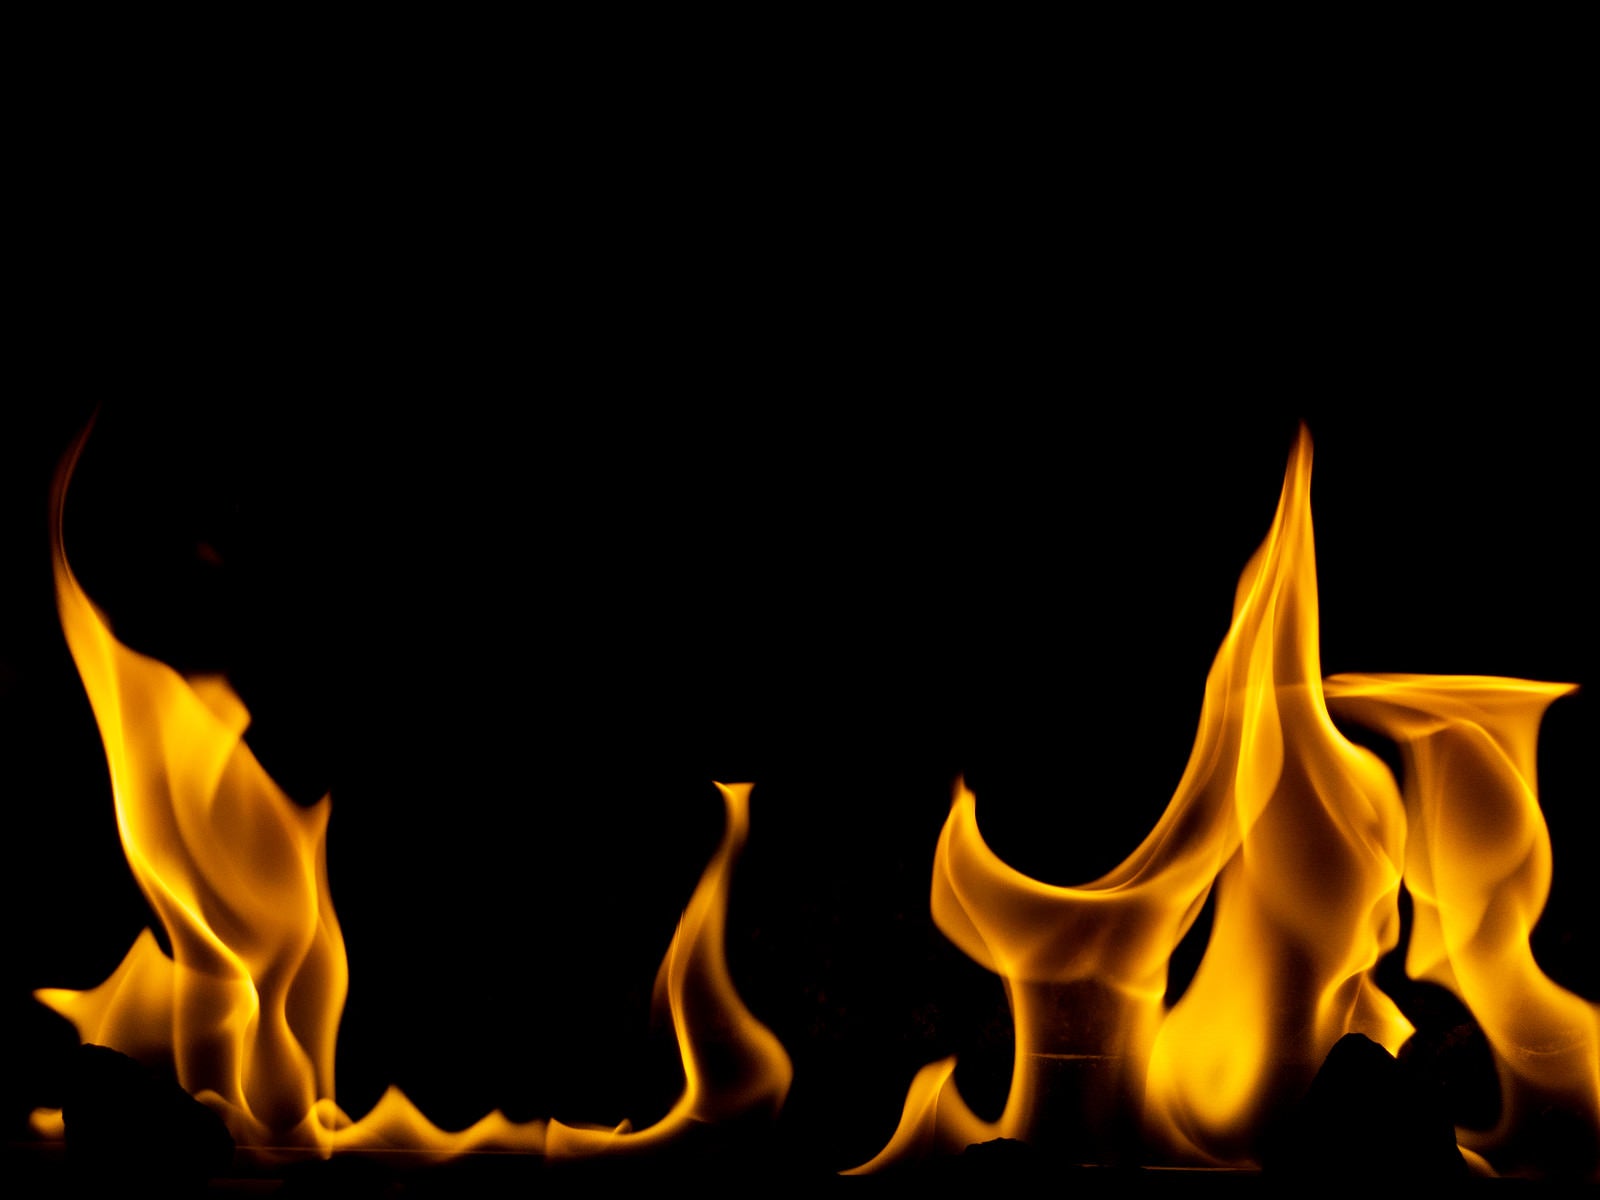 「炎がメラメラと燃える」の写真